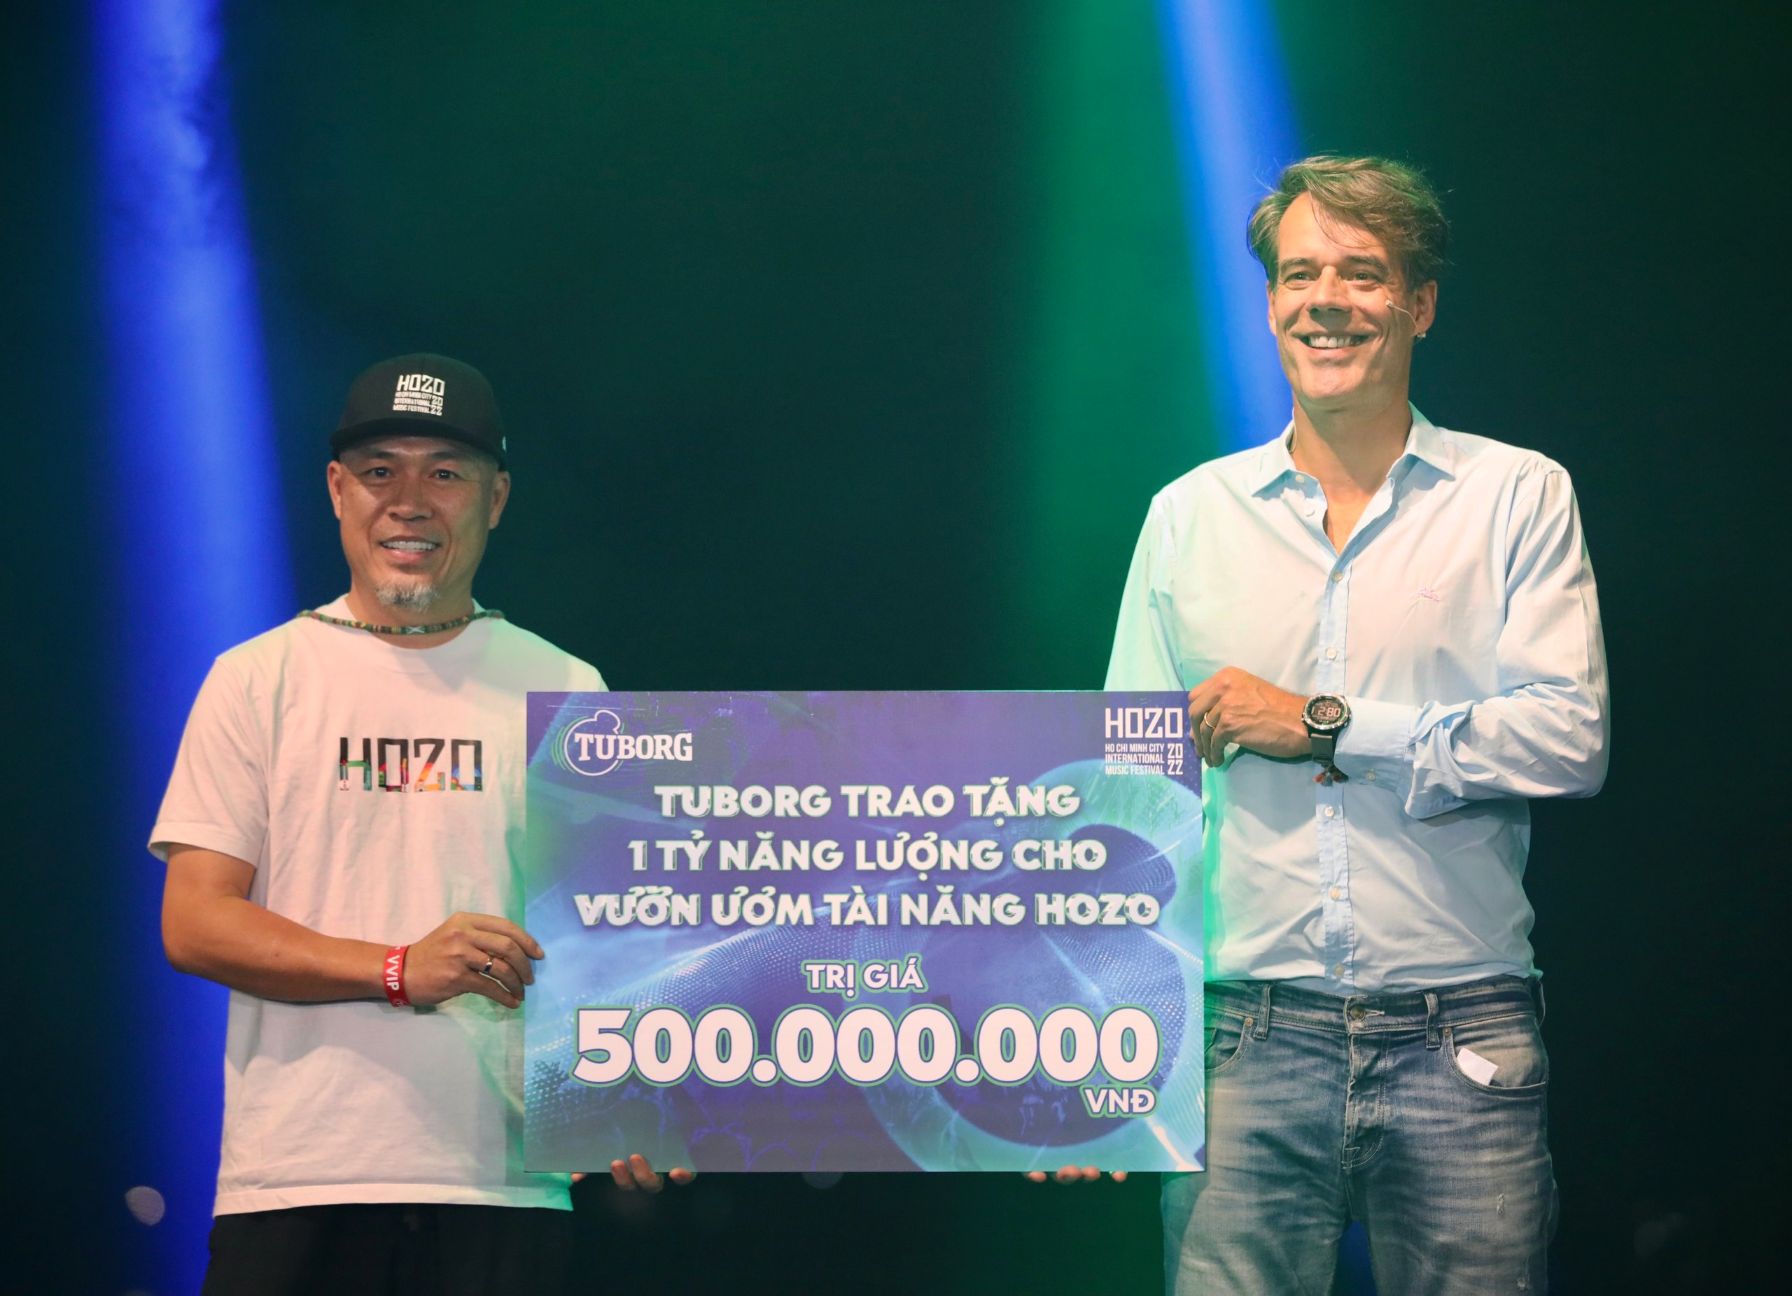 Tại sự kiện Tuborg cũng cam kết quyên góp 500 triệu đồng nhằm hỗ trợ phát triển các tài năng âm nhạc trẻ 1 Tuborg chính thức ra mắt, cam kết quyên góp 500 triệu đồng hỗ trợ tài năng âm nhạc trẻ